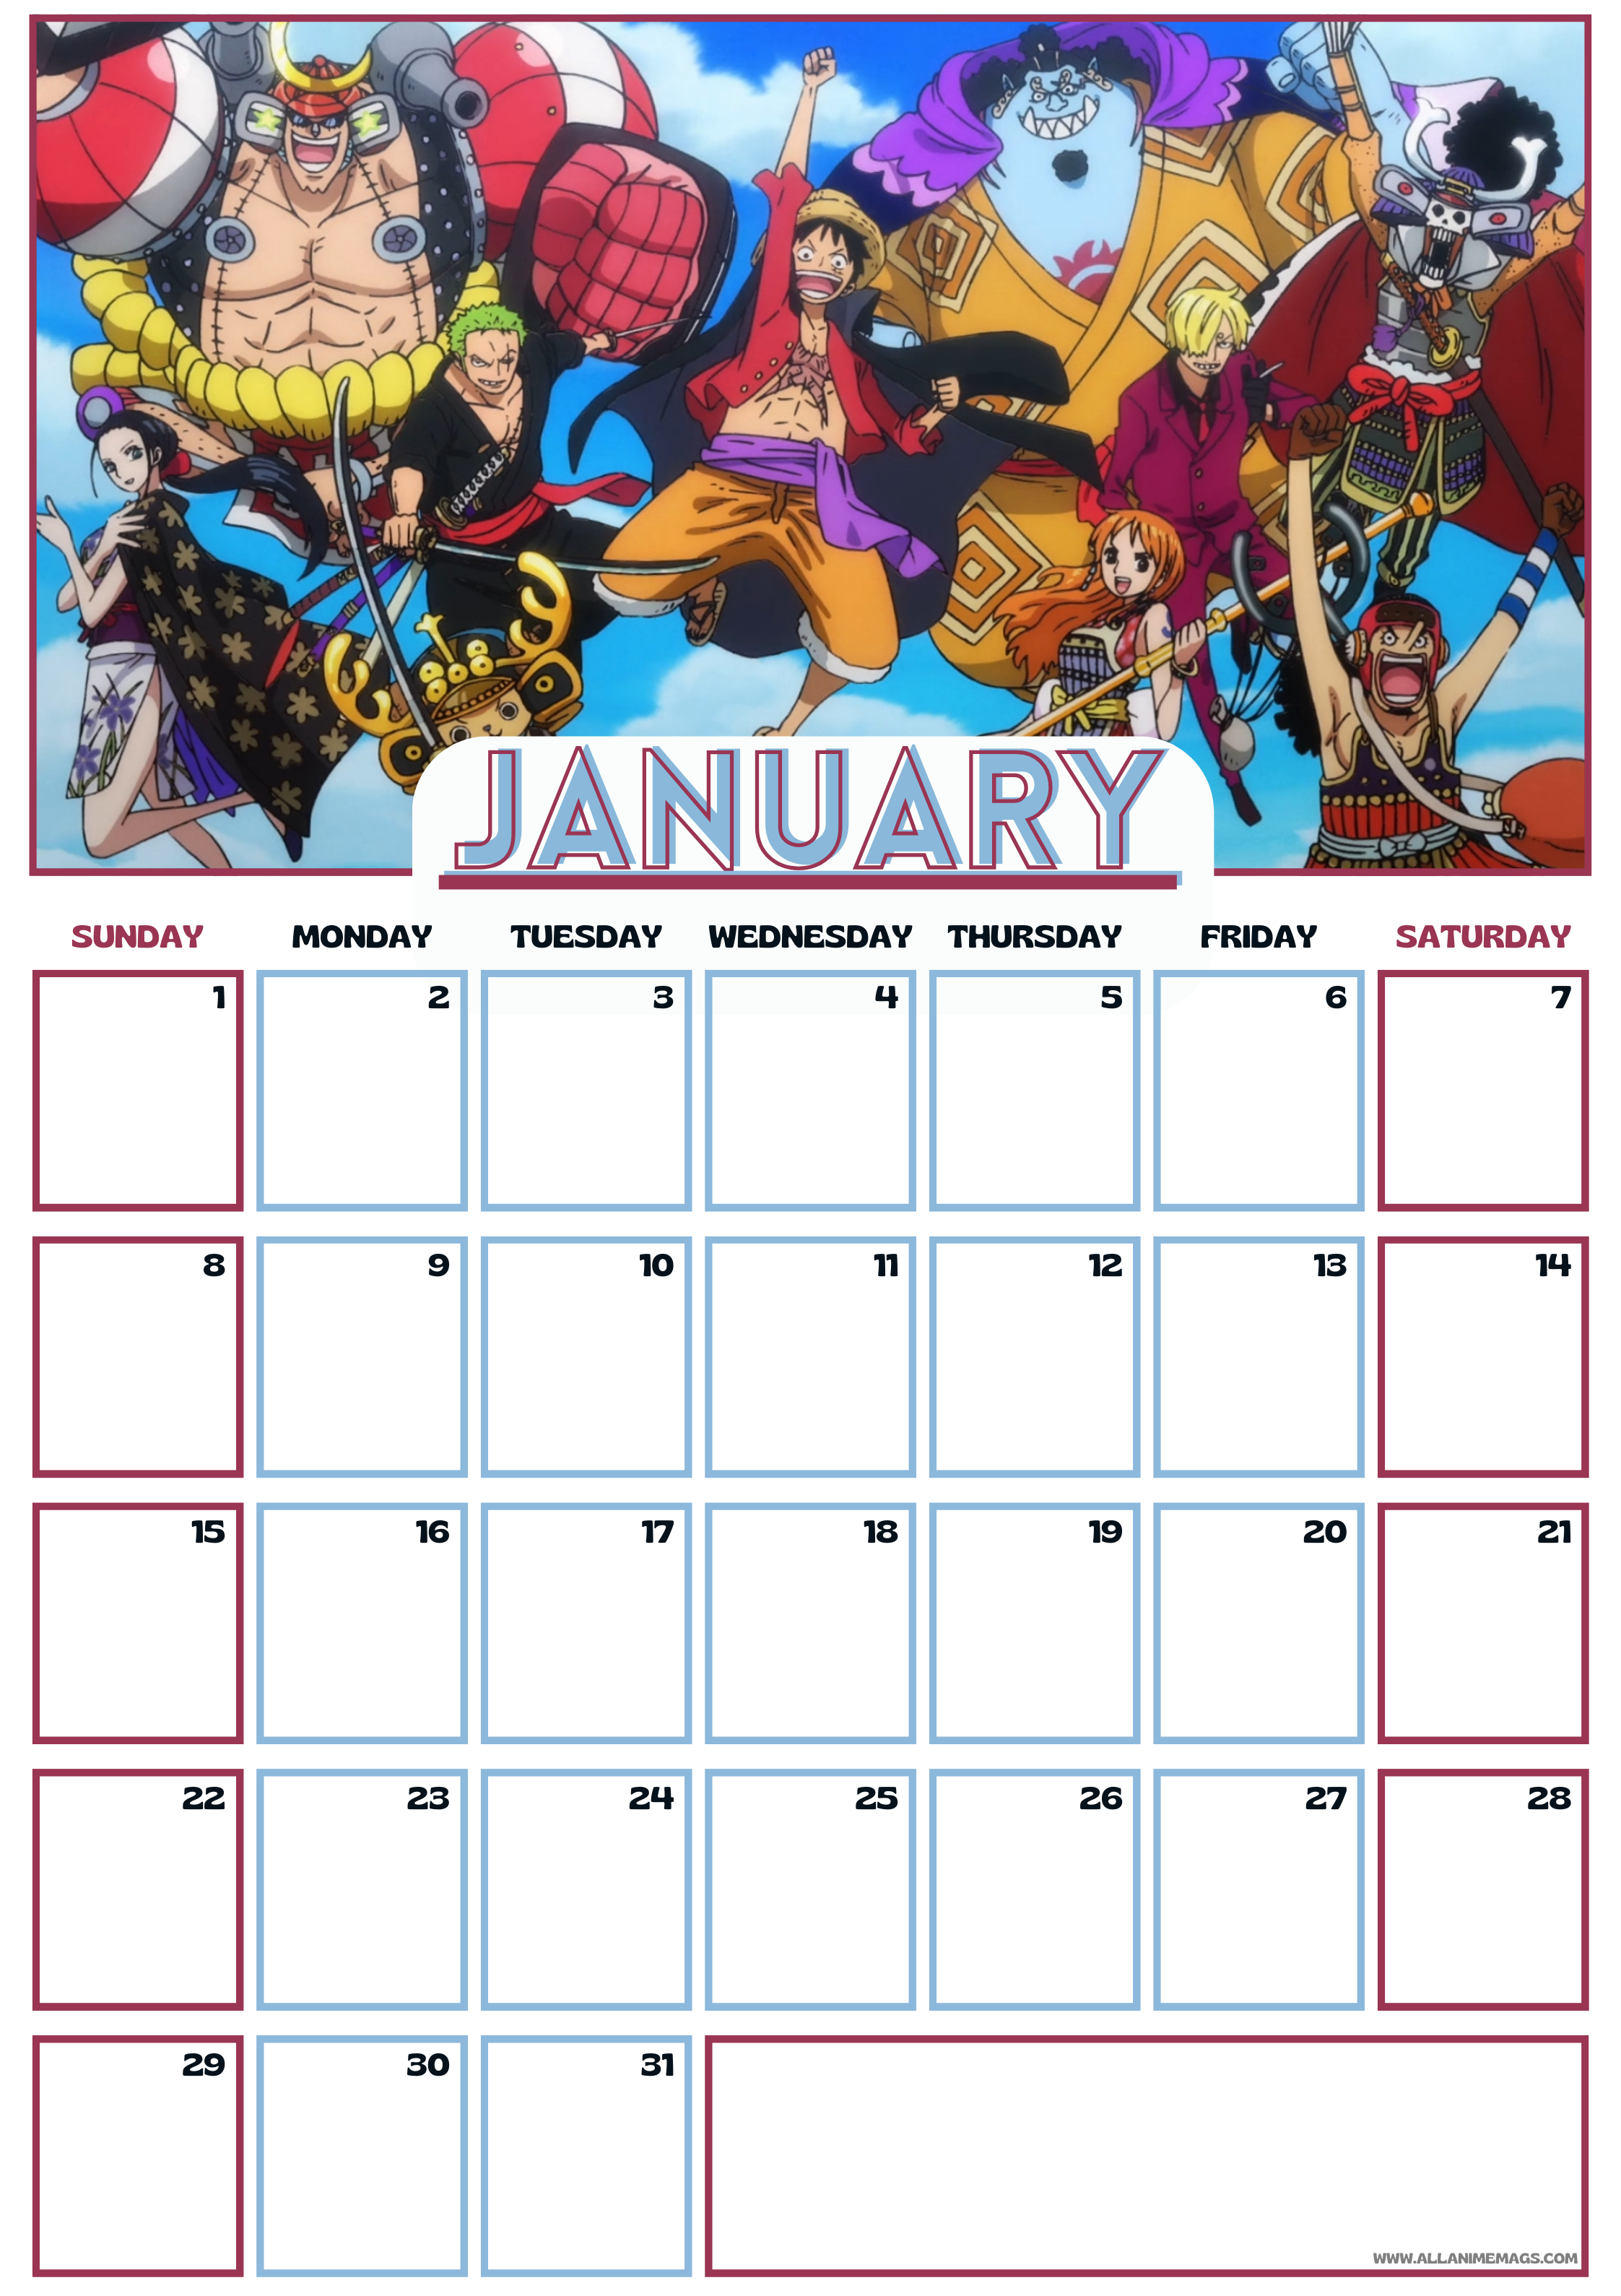 Wall Calendar 2021 Anime One Piece